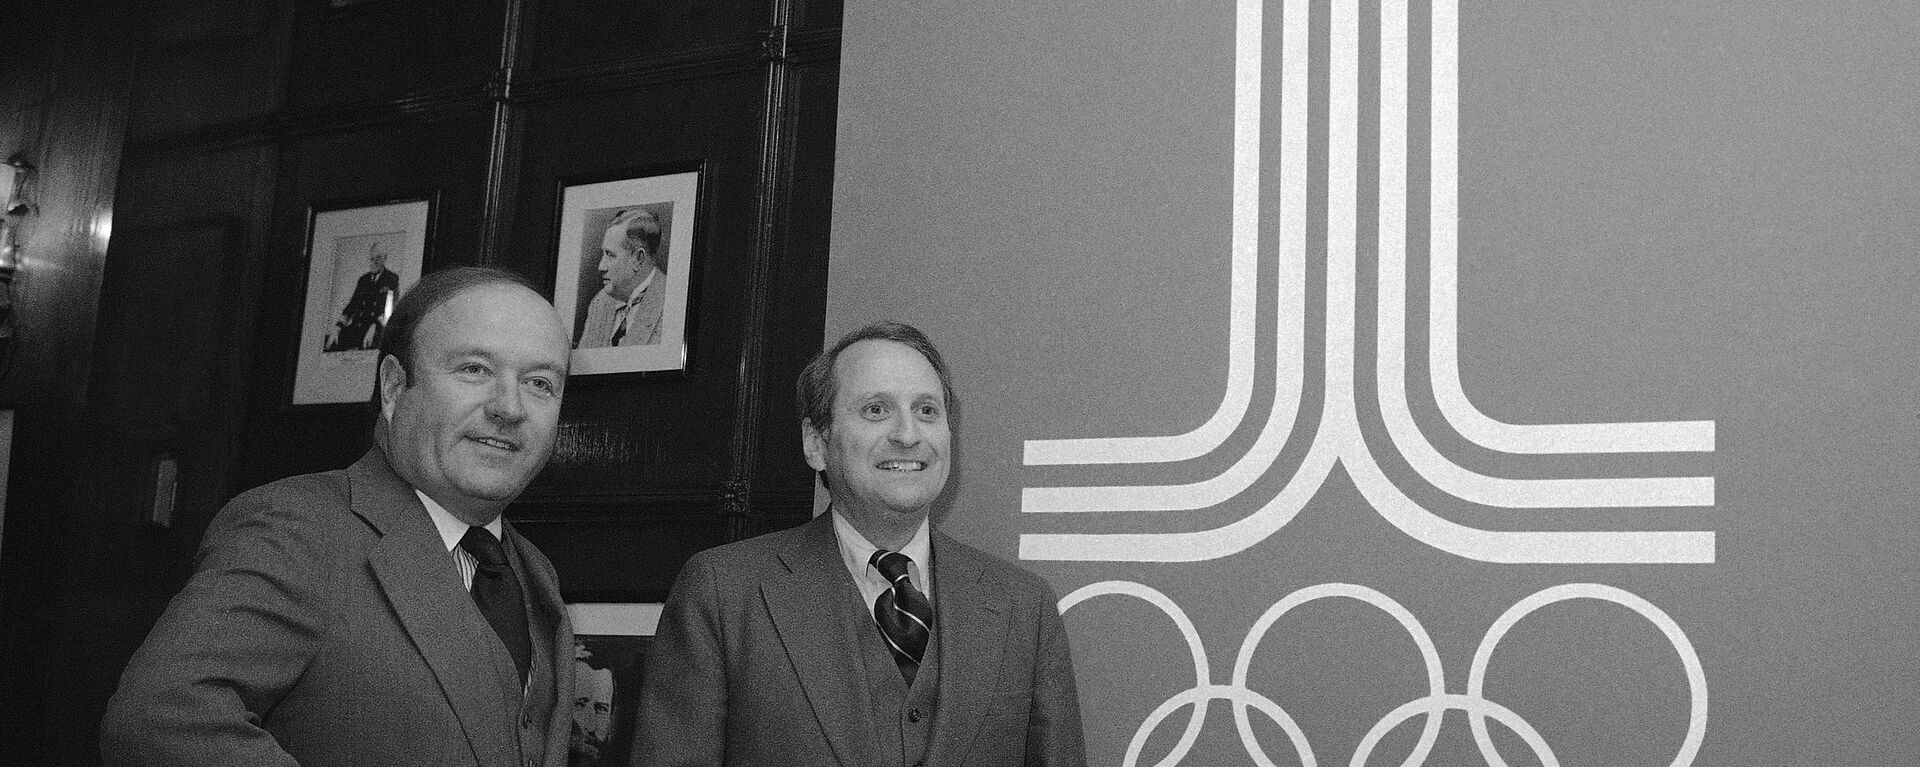 Герберт Шлоссер (справа) и Роберт Ховард позируют на фоне эмблемы Олимпиады-80 - Sputnik Латвия, 1920, 22.07.2020